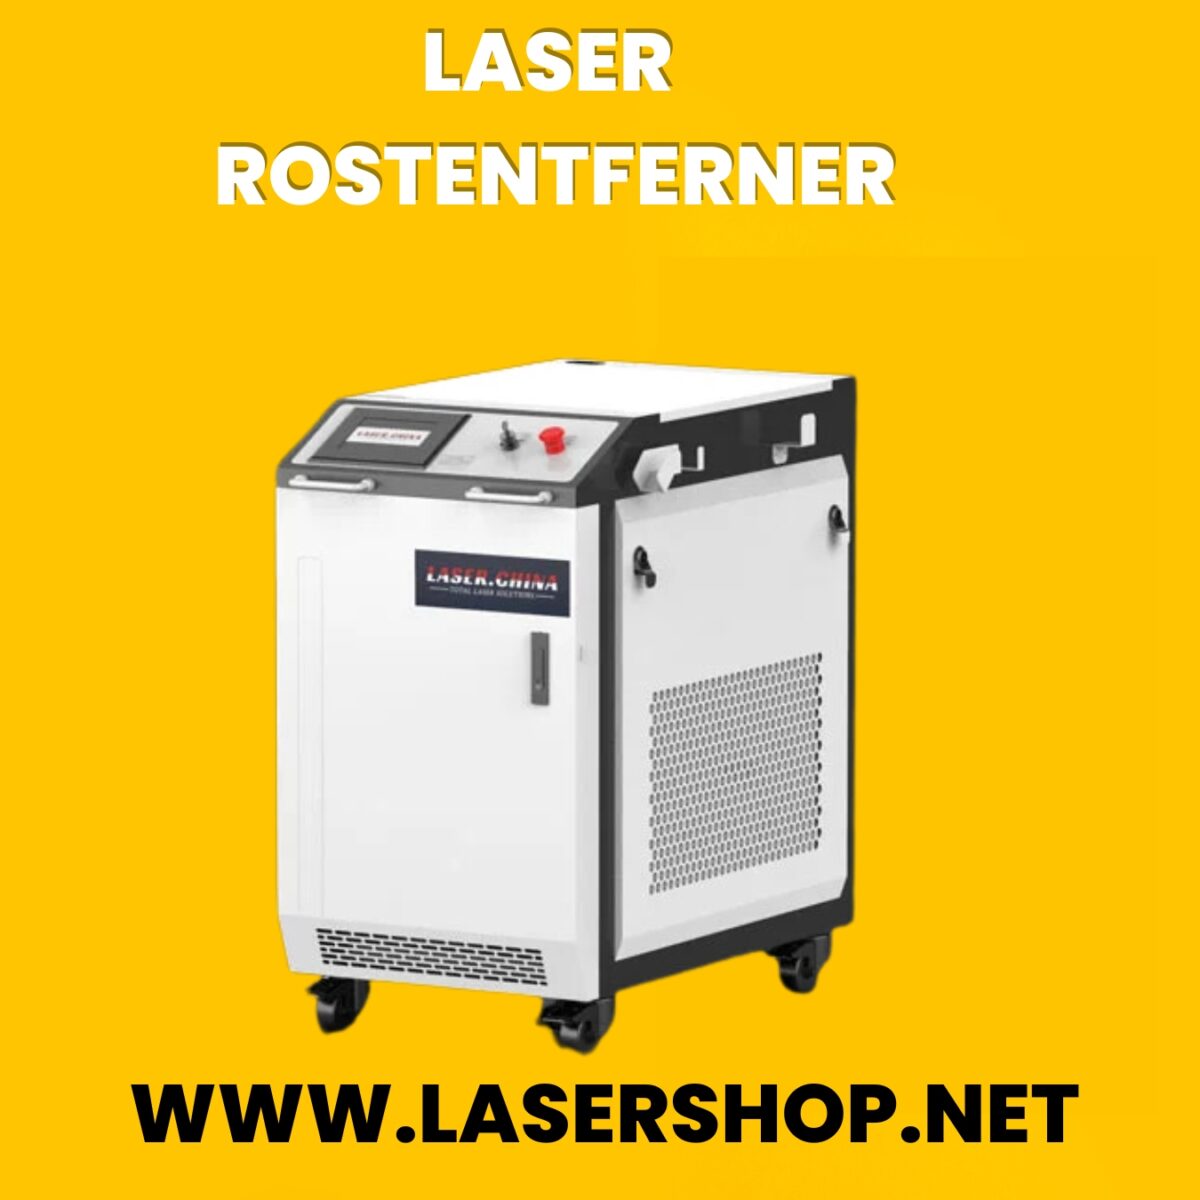 laser rostentferner